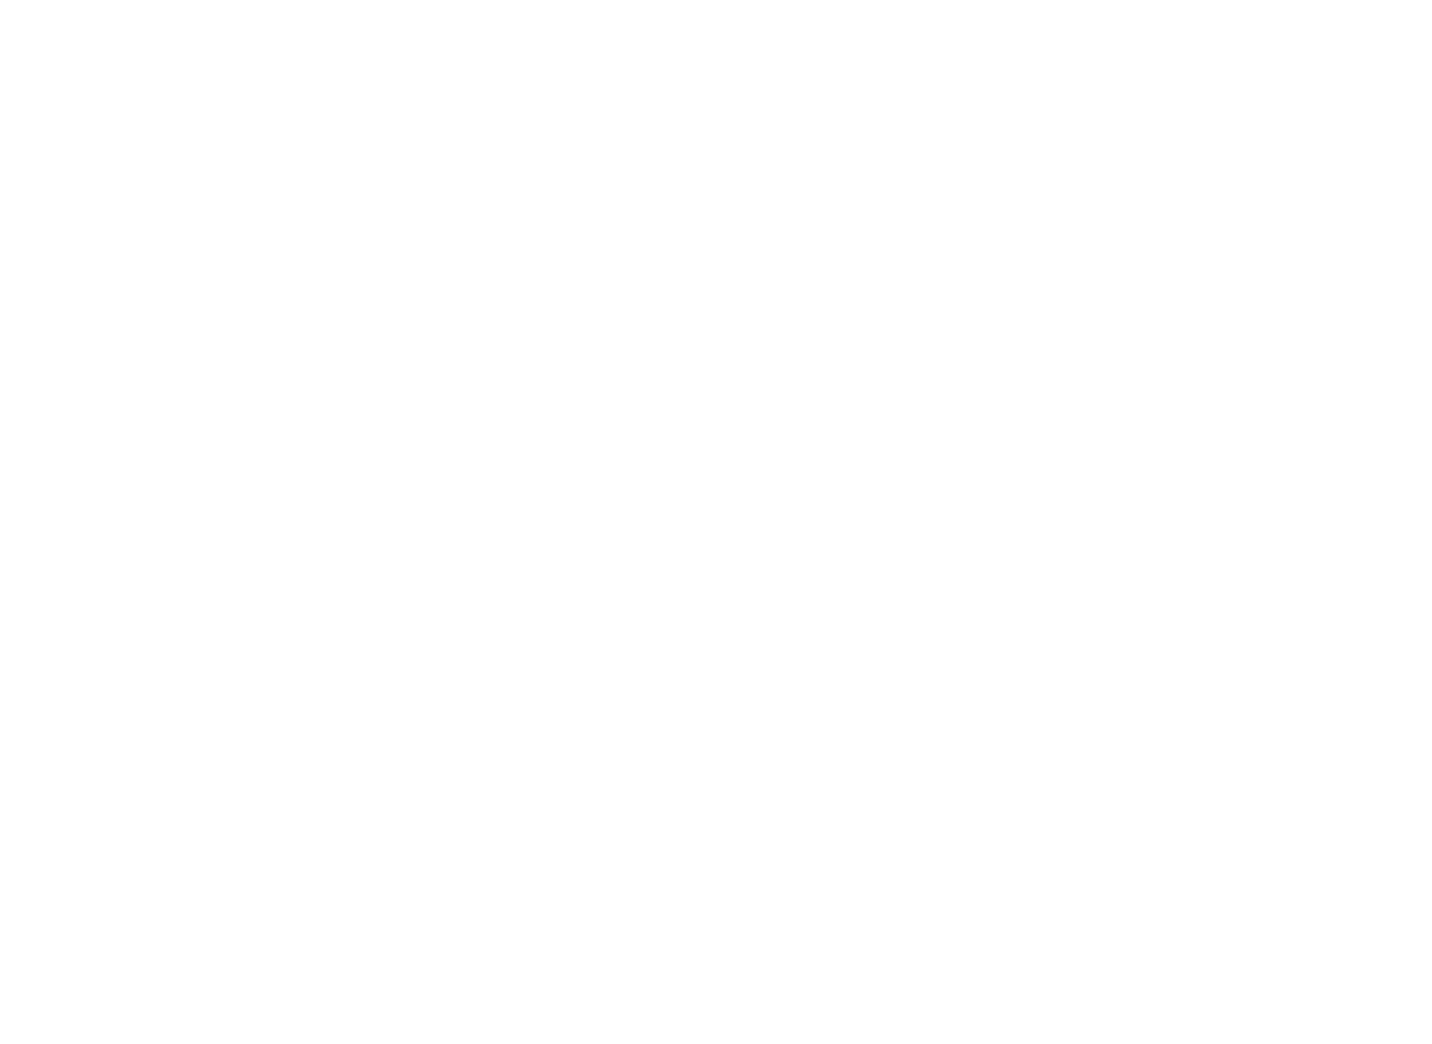 Профиль алюминиевый Flexy IZI KARNIZ2 05 для изготовления скрытых п-образных карнизных ниш с двумя пазами для установки штор и гардин с подсветкой: размер, вид, применение, способ монтажа в Беларуси (РБ)